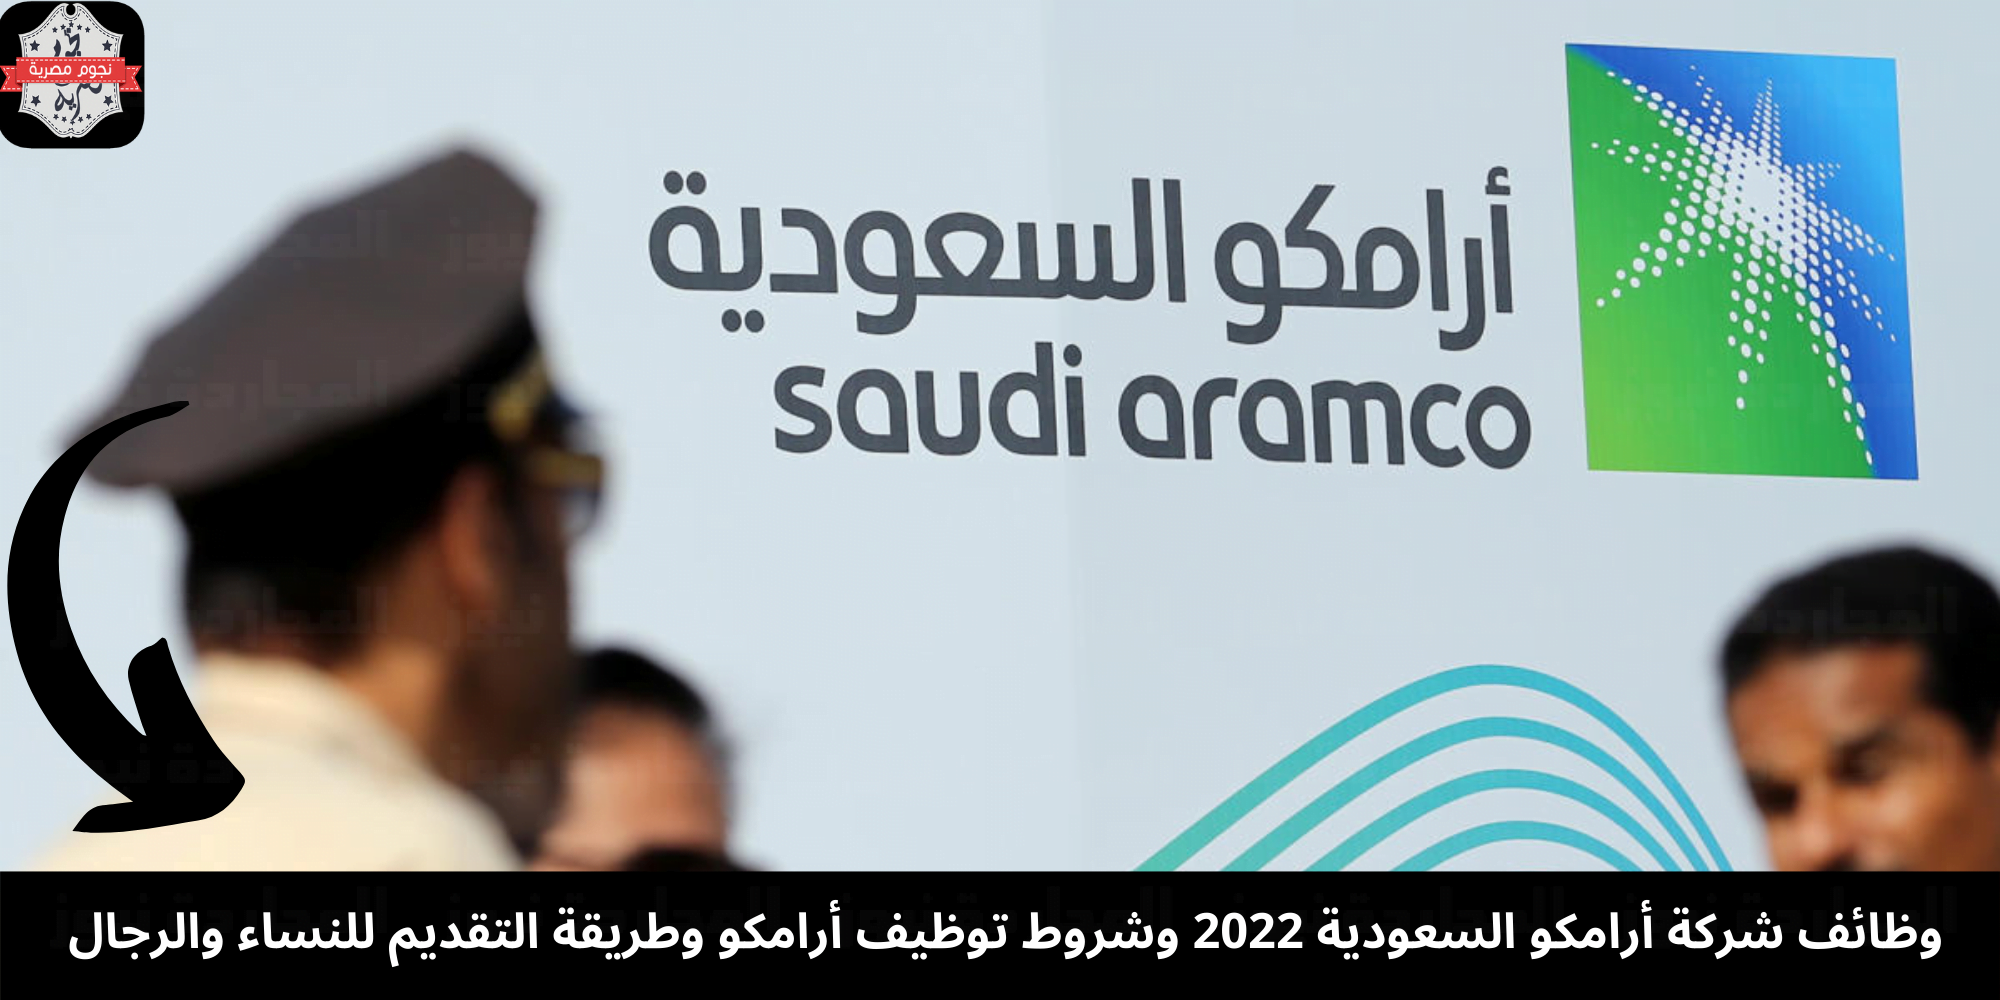 البوكس نيوز – وظائف شركة أرامكو السعودية 2022 وشروط توظيف أرامكو وطريقة التقديم للنساء والرجال